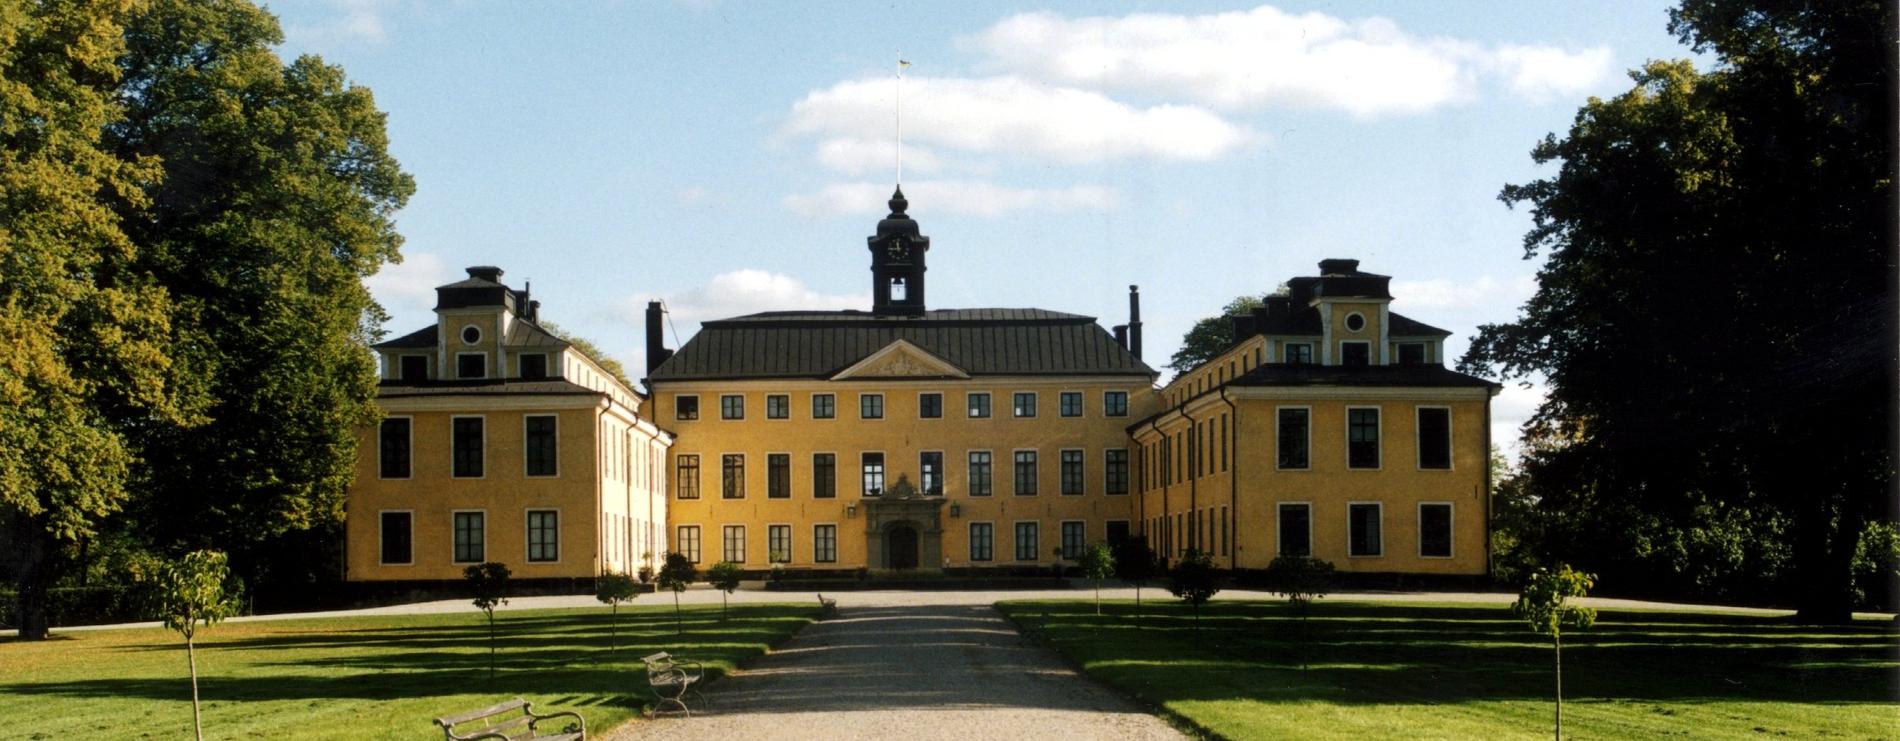 Ulriksdals slott.